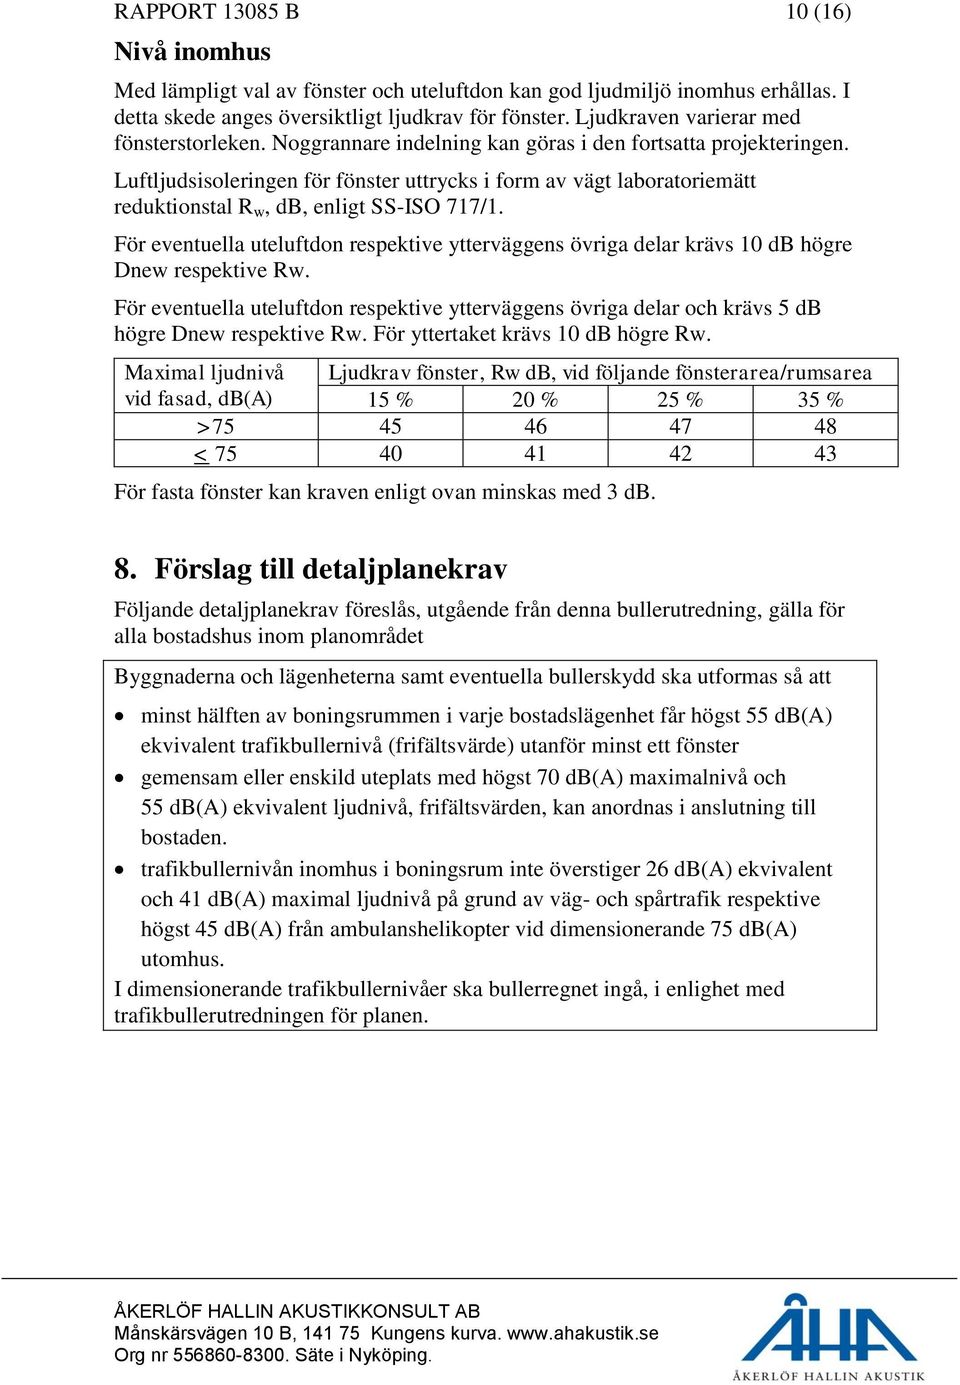 Luftljudsisoleringen för fönster uttrycks i form av vägt laboratoriemätt reduktionstal R w, db, enligt SS-ISO 717/1.